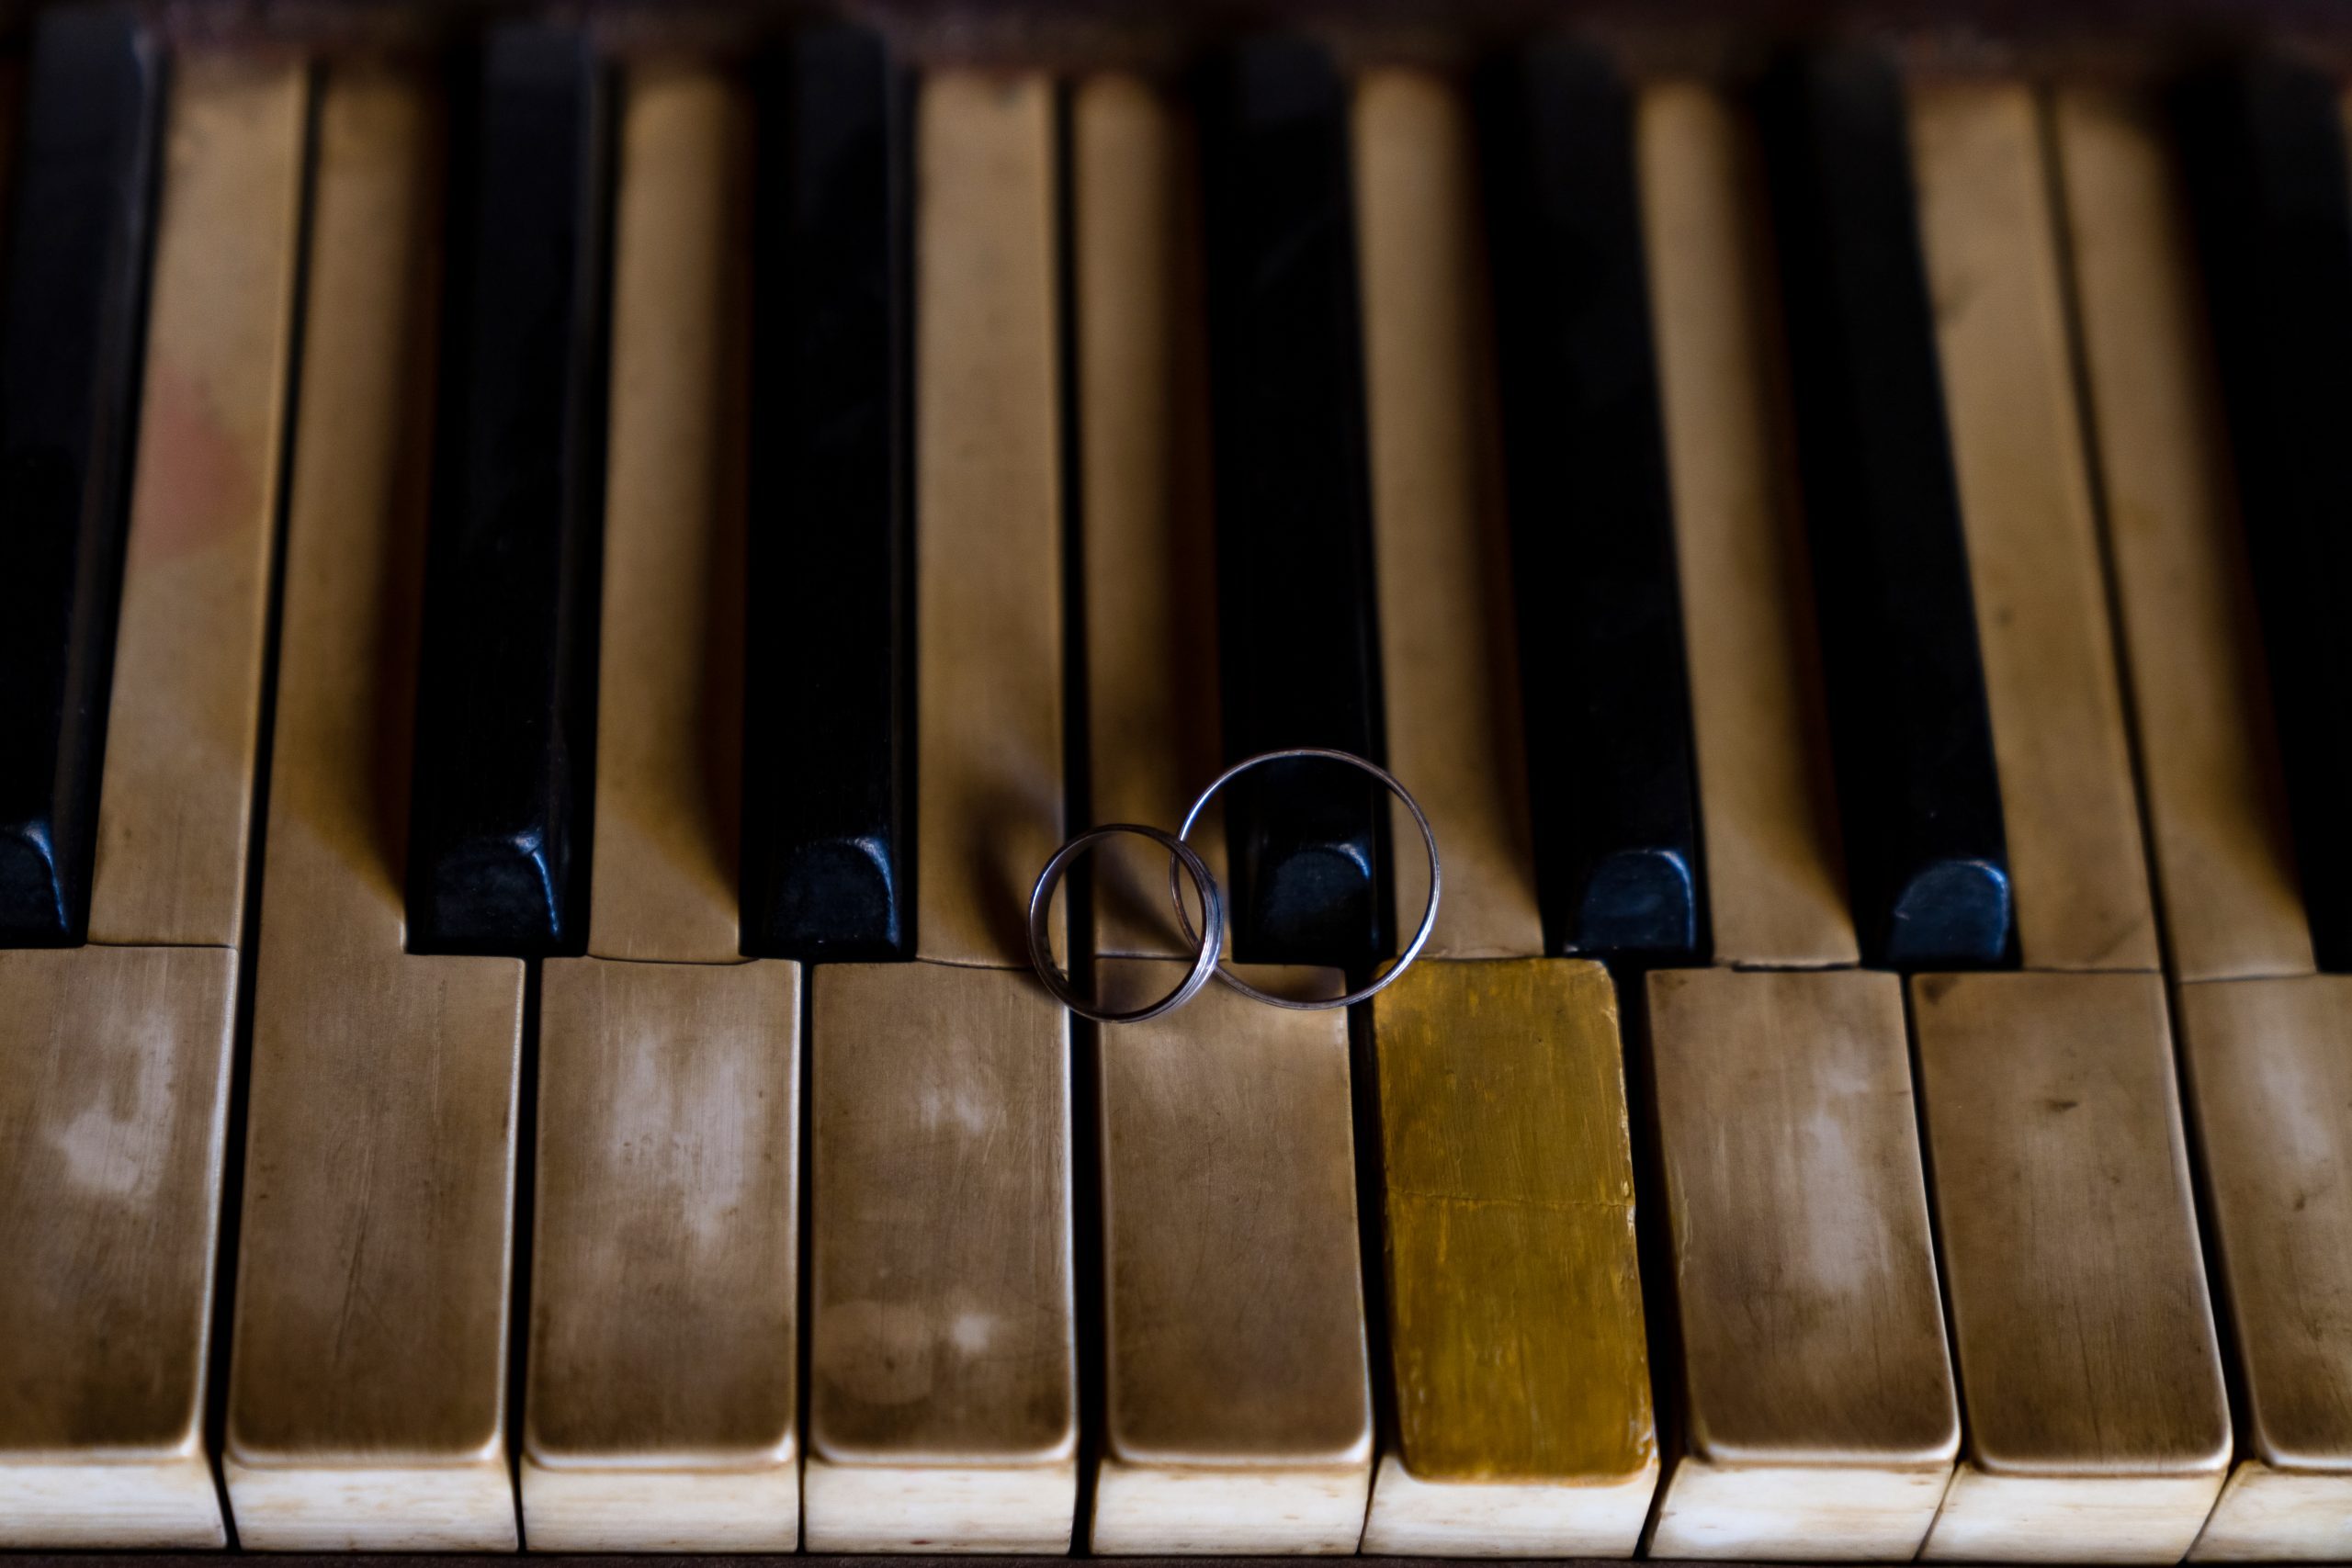 Los anillos sobre los teclados del piano